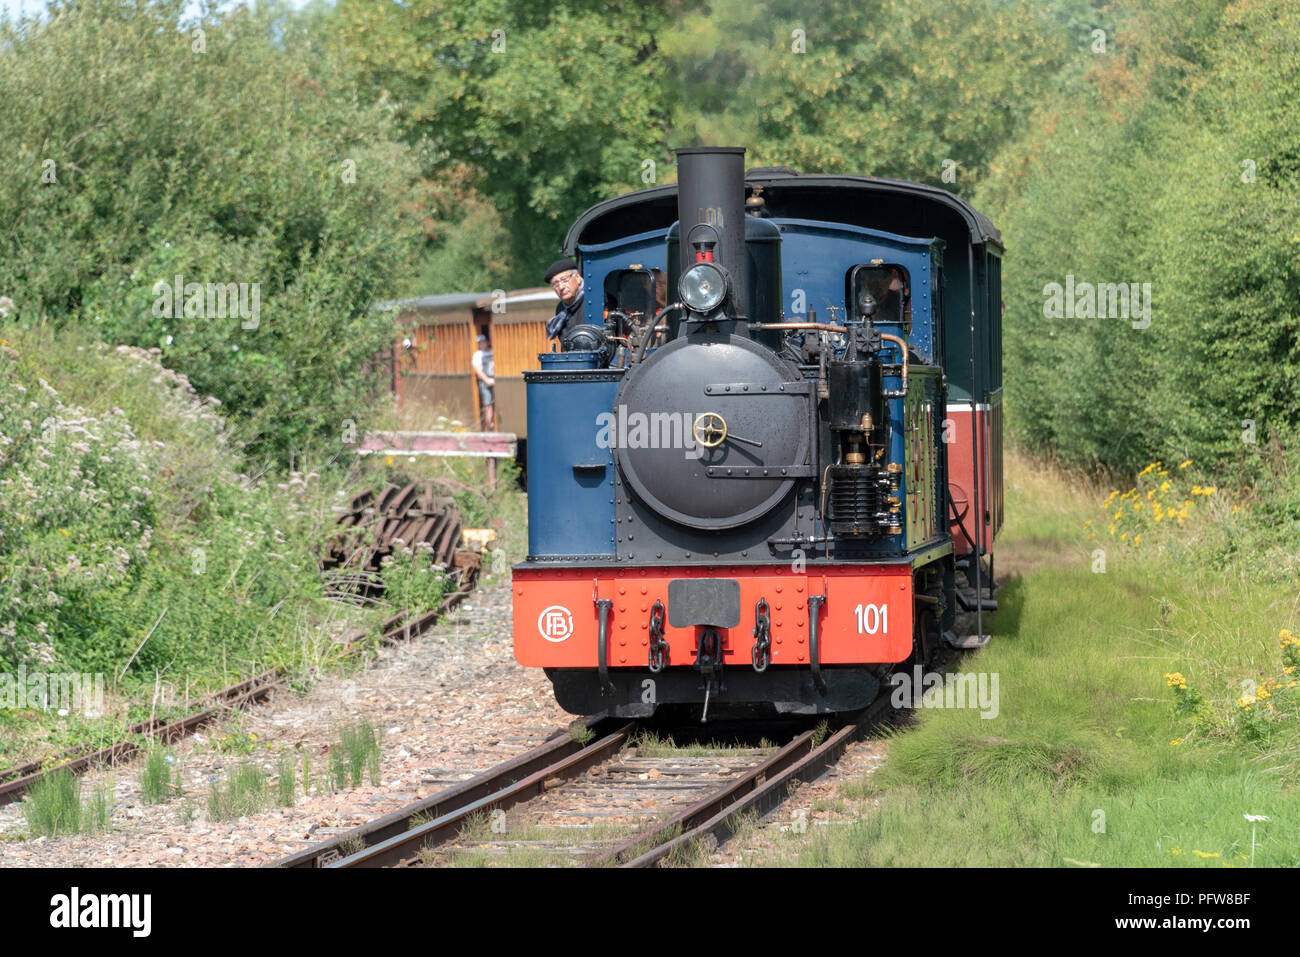 A steam train of the Chemin de fer de al Baie de Somme approaching the station at Noyelles sur mer. Stock Photo